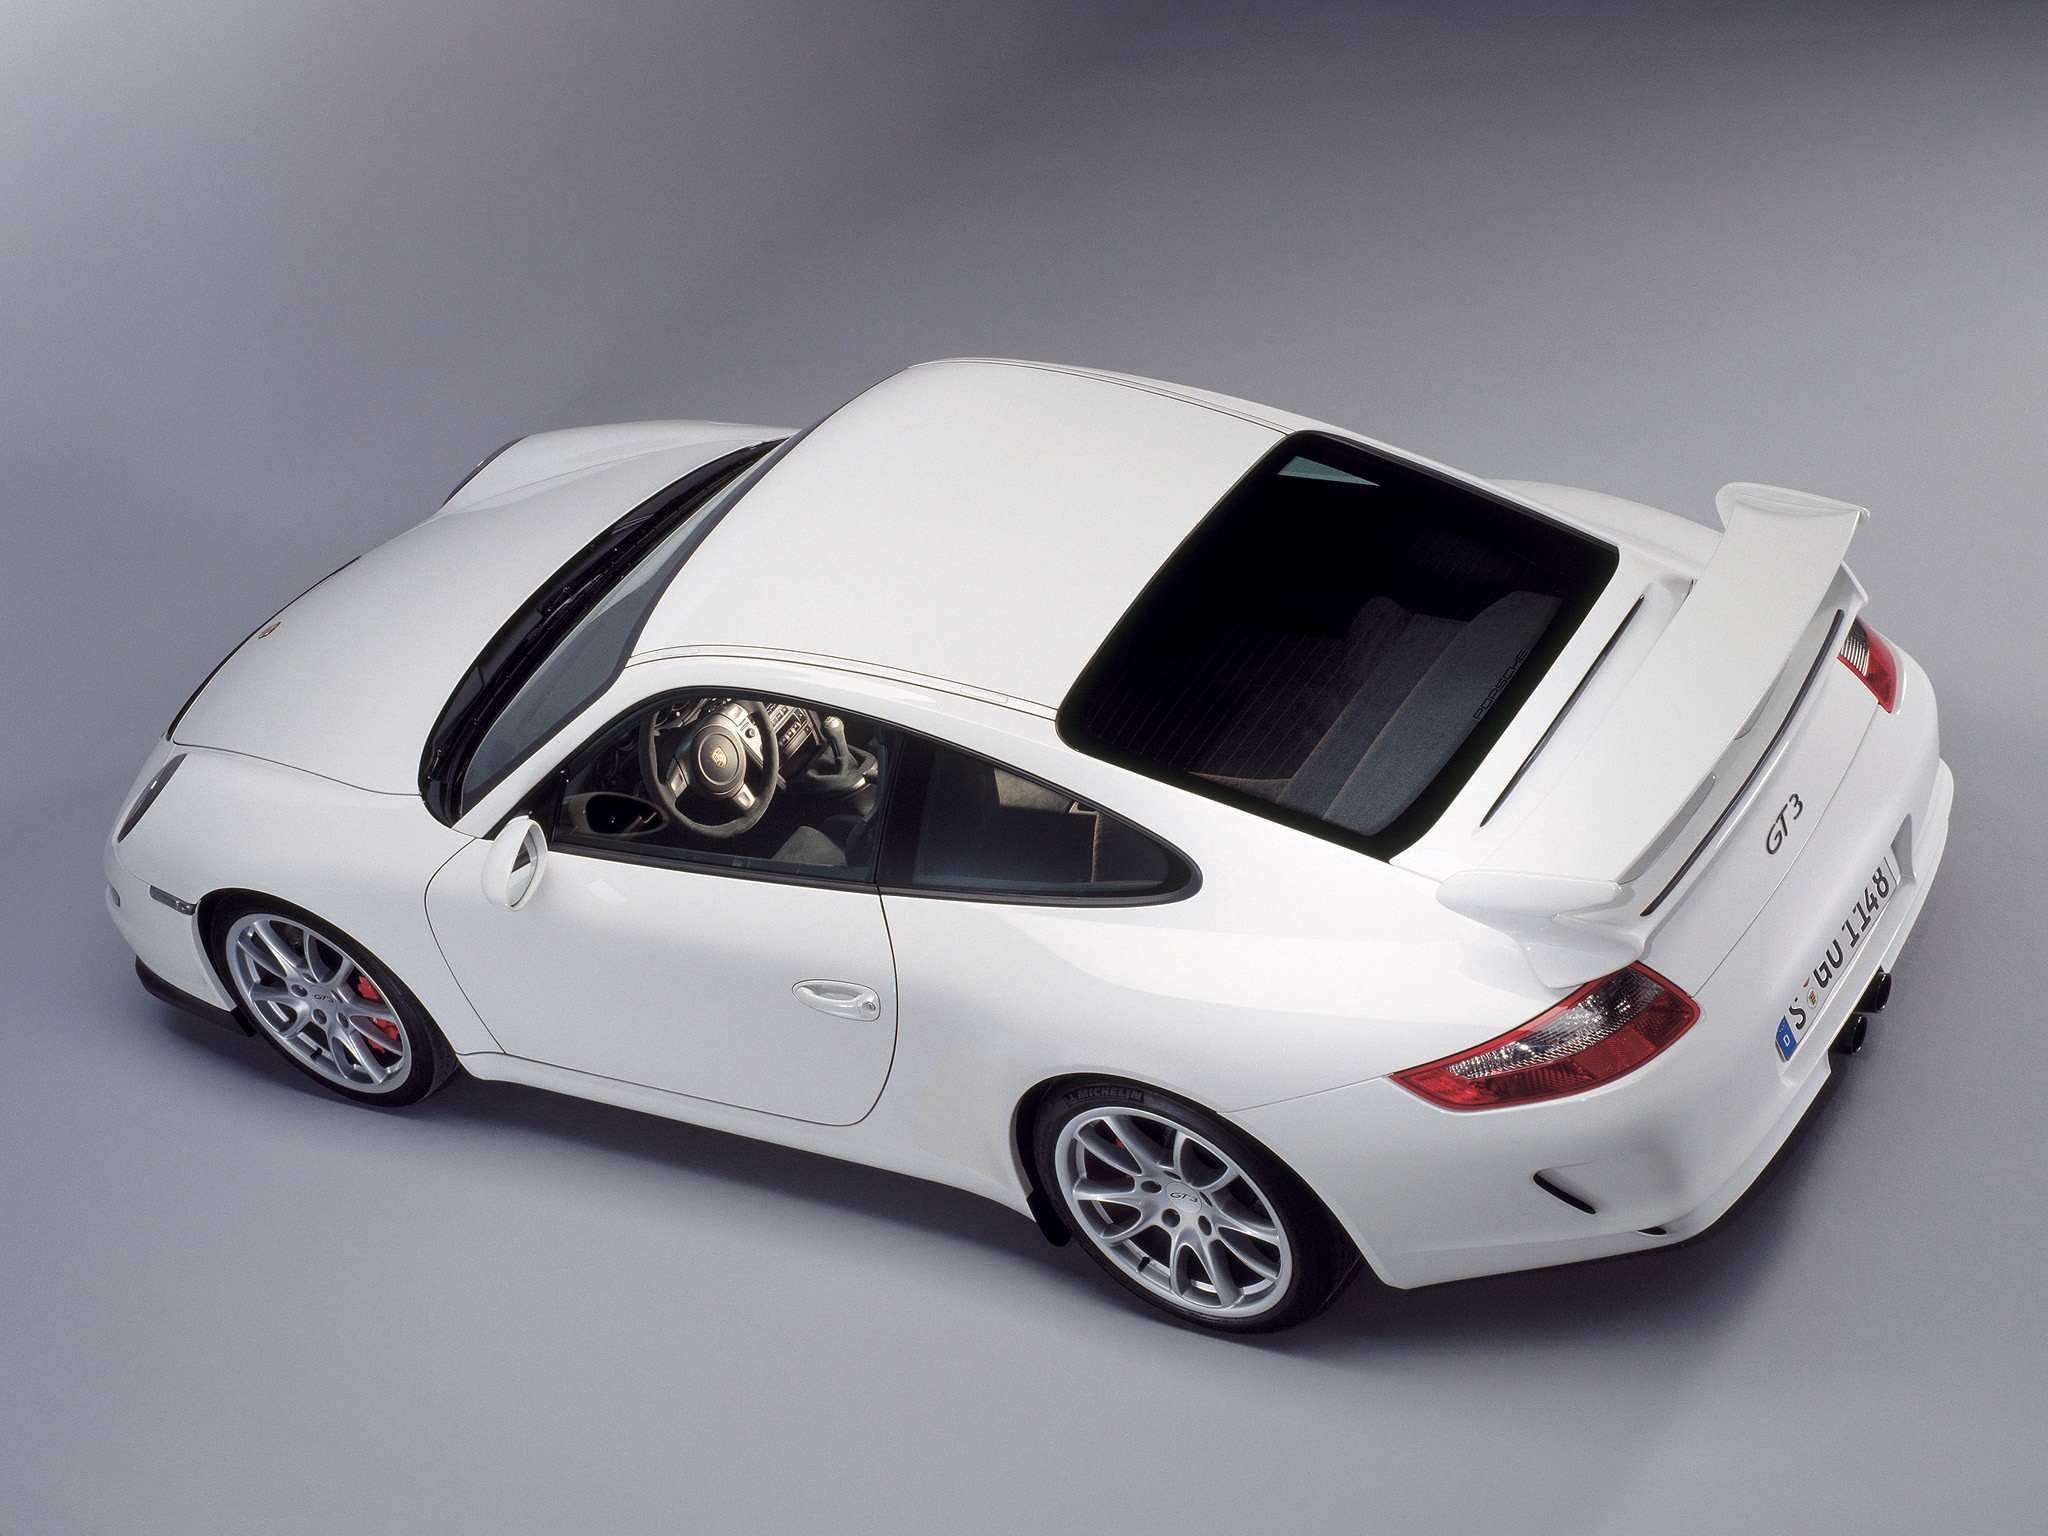 Hardcover Prospekt 06.2007 Typ 997 Porsche Exclusive 911 Carrera S Turbo GT3 